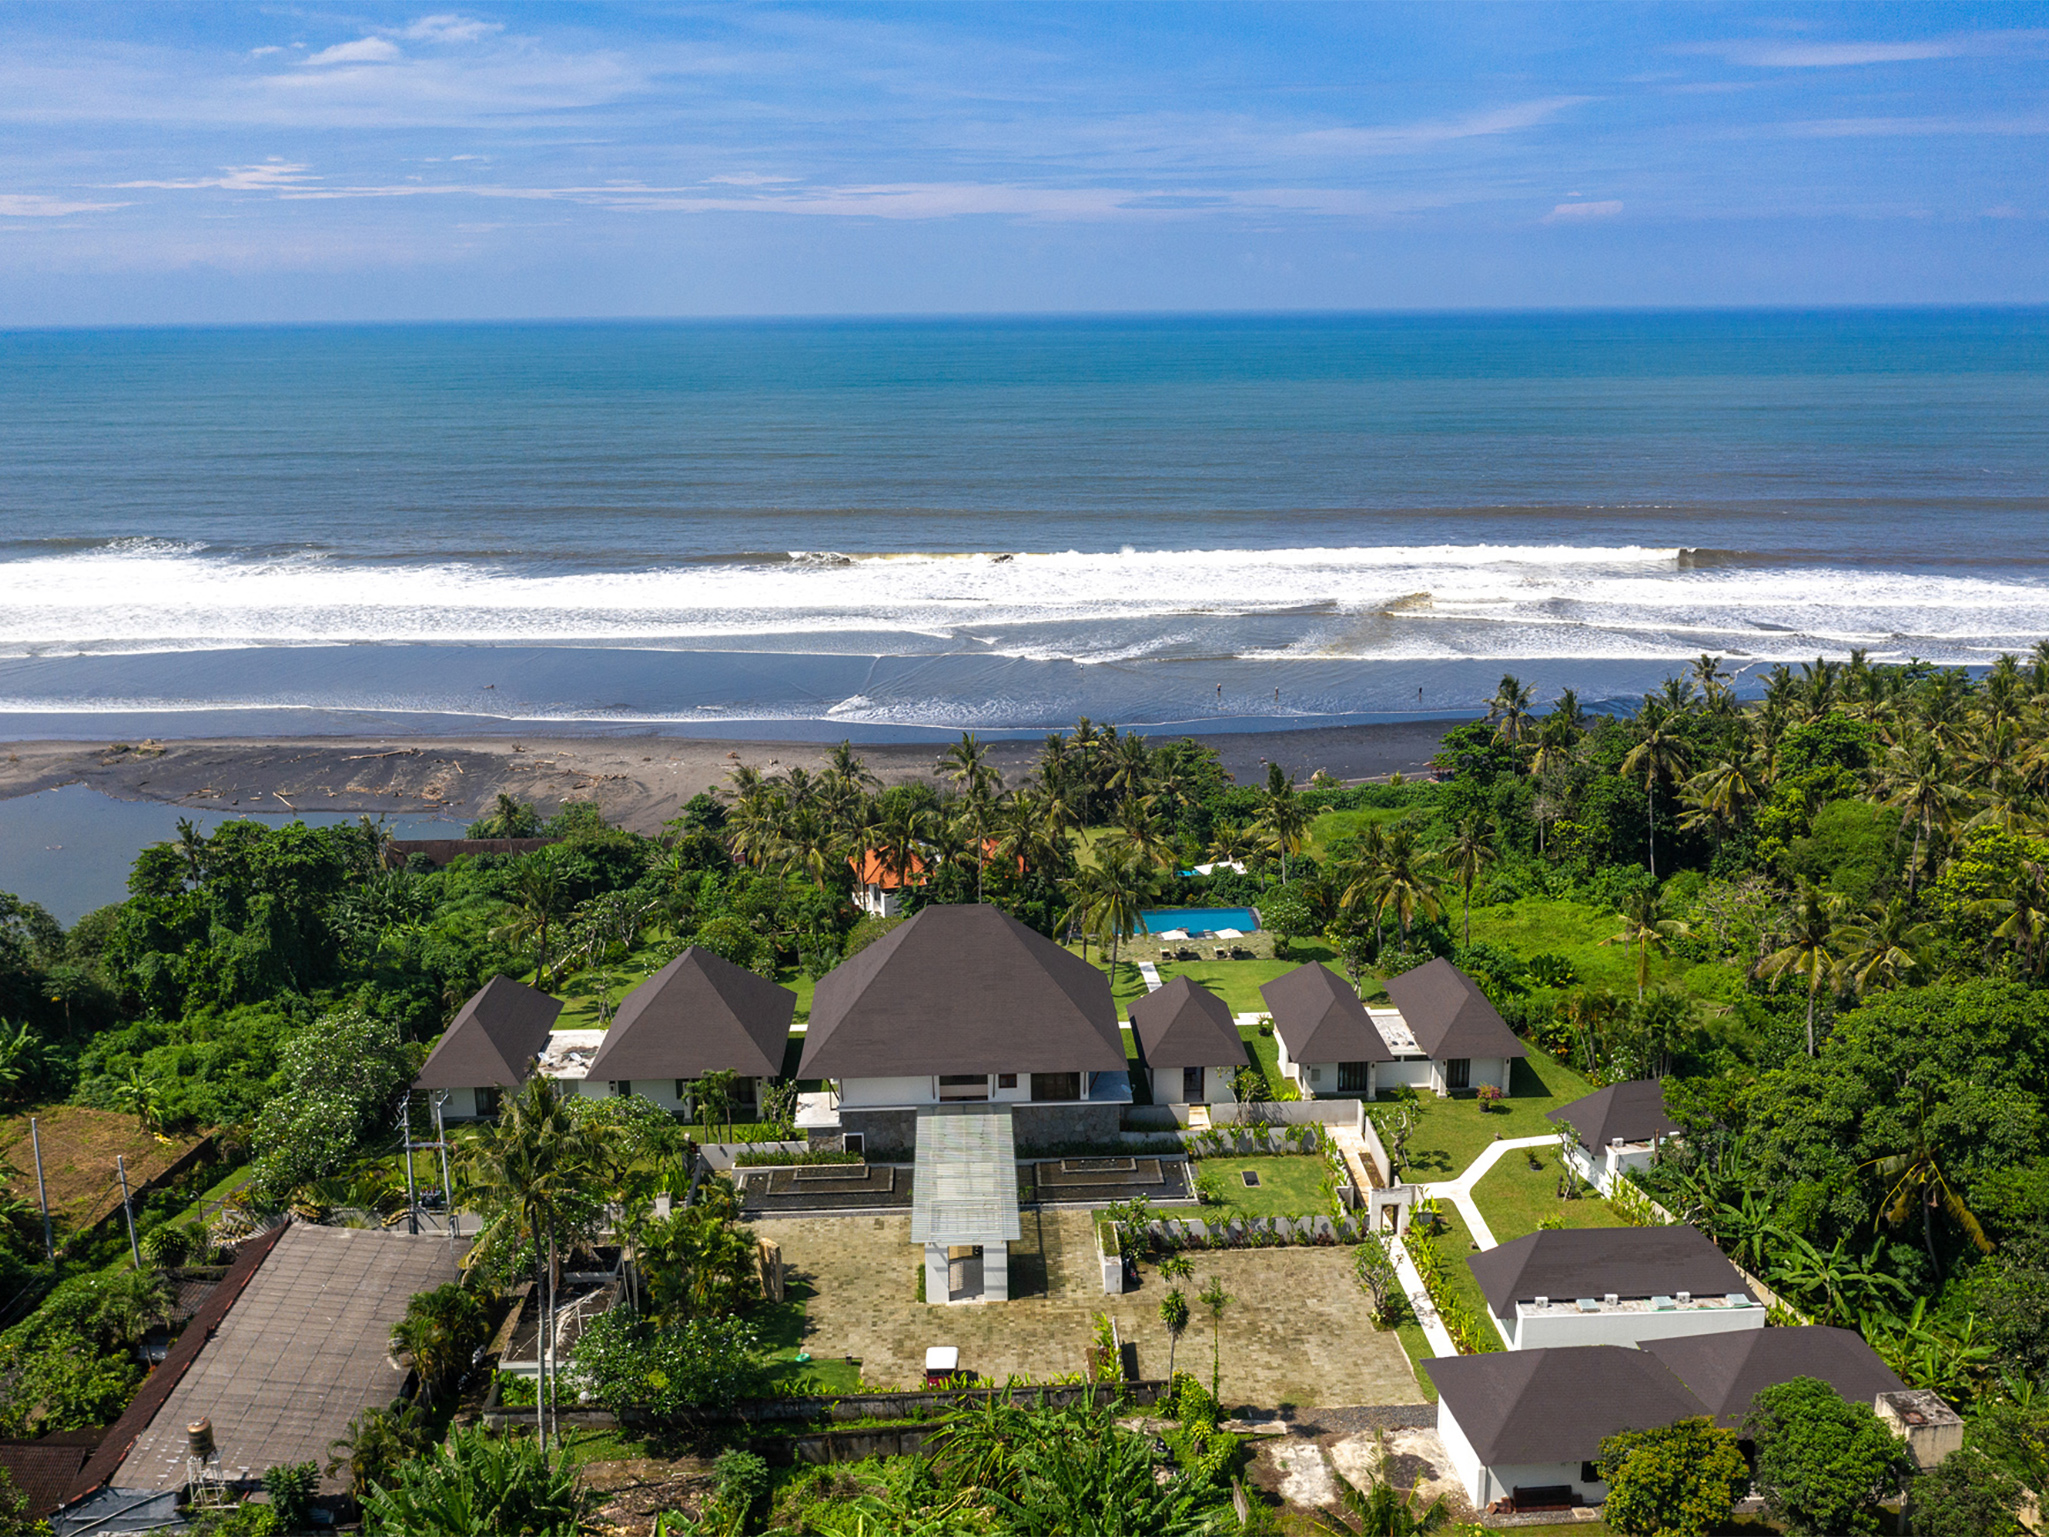 Villa Kailasha - Aerial shot and beach view - Villa Kailasha, Tabanan, Bali